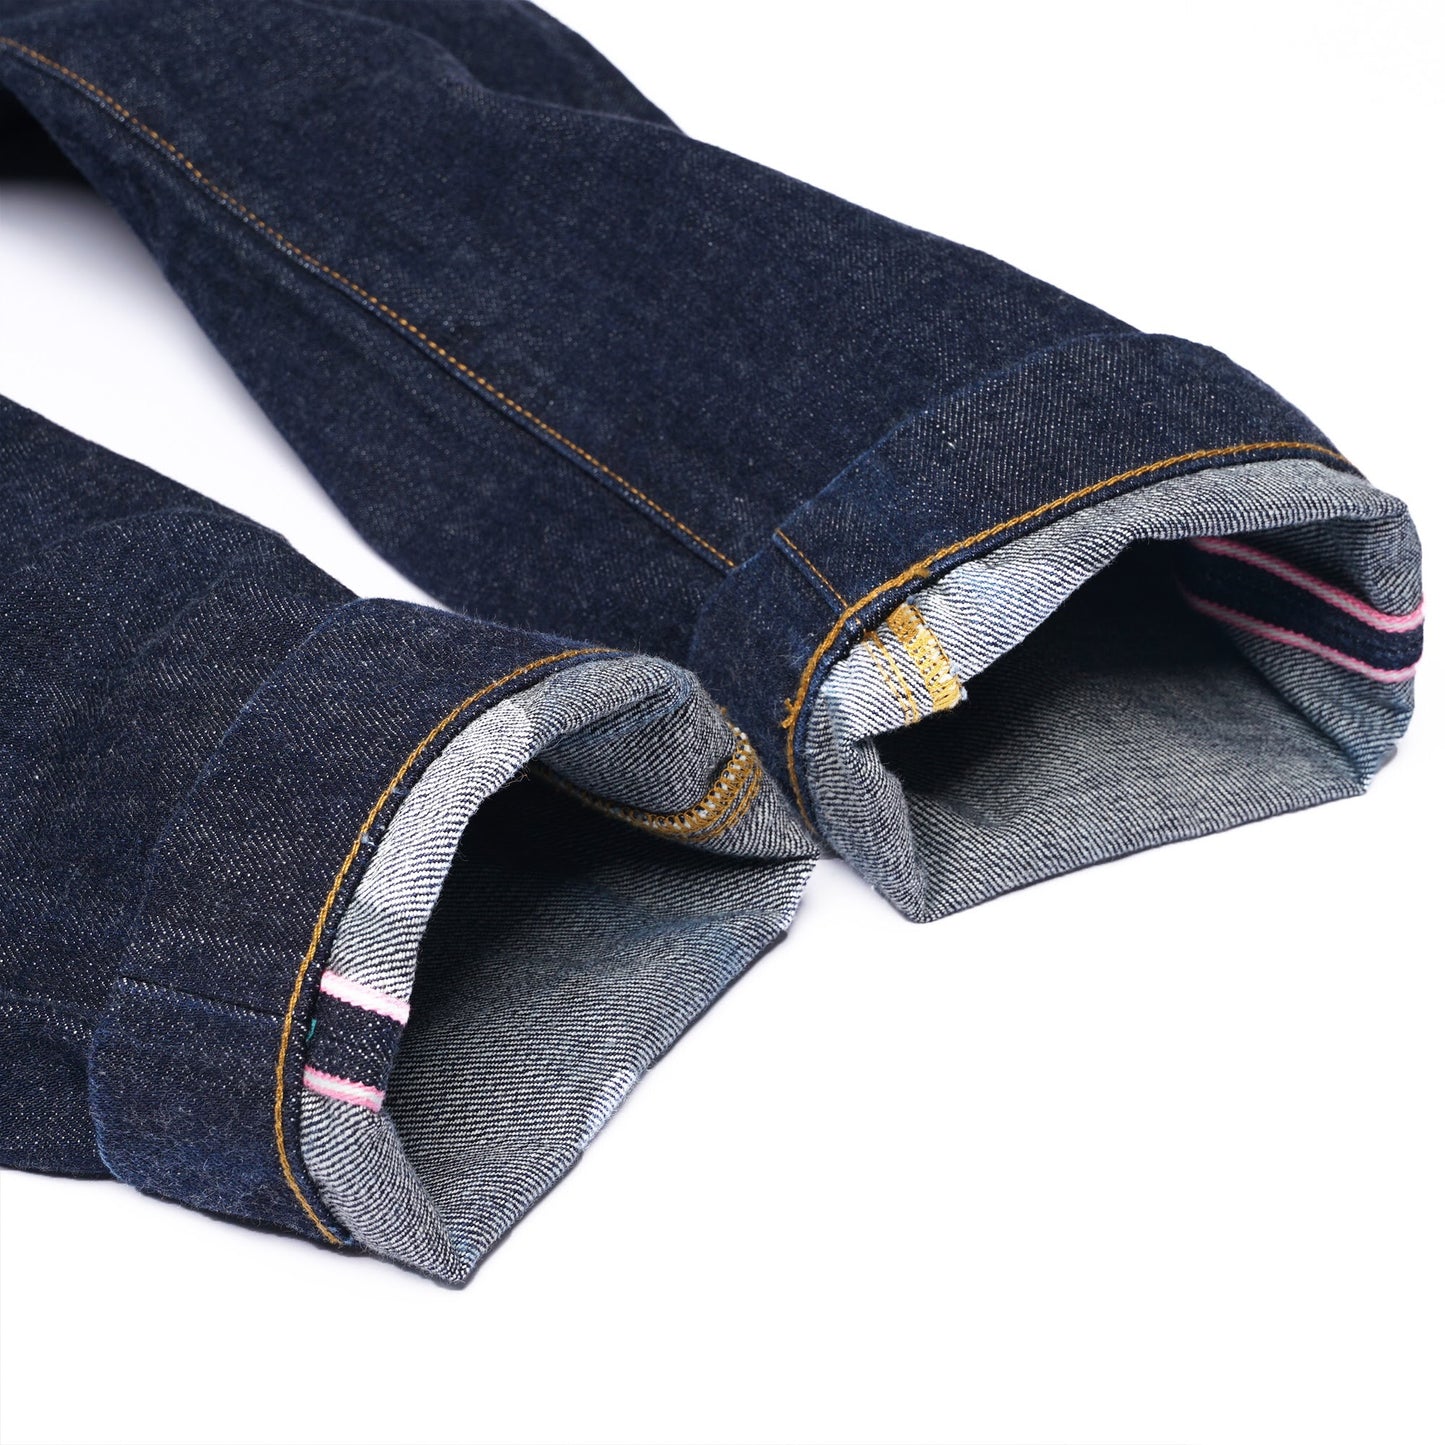 【訂製】15oz Collect Mills Denim Trousers